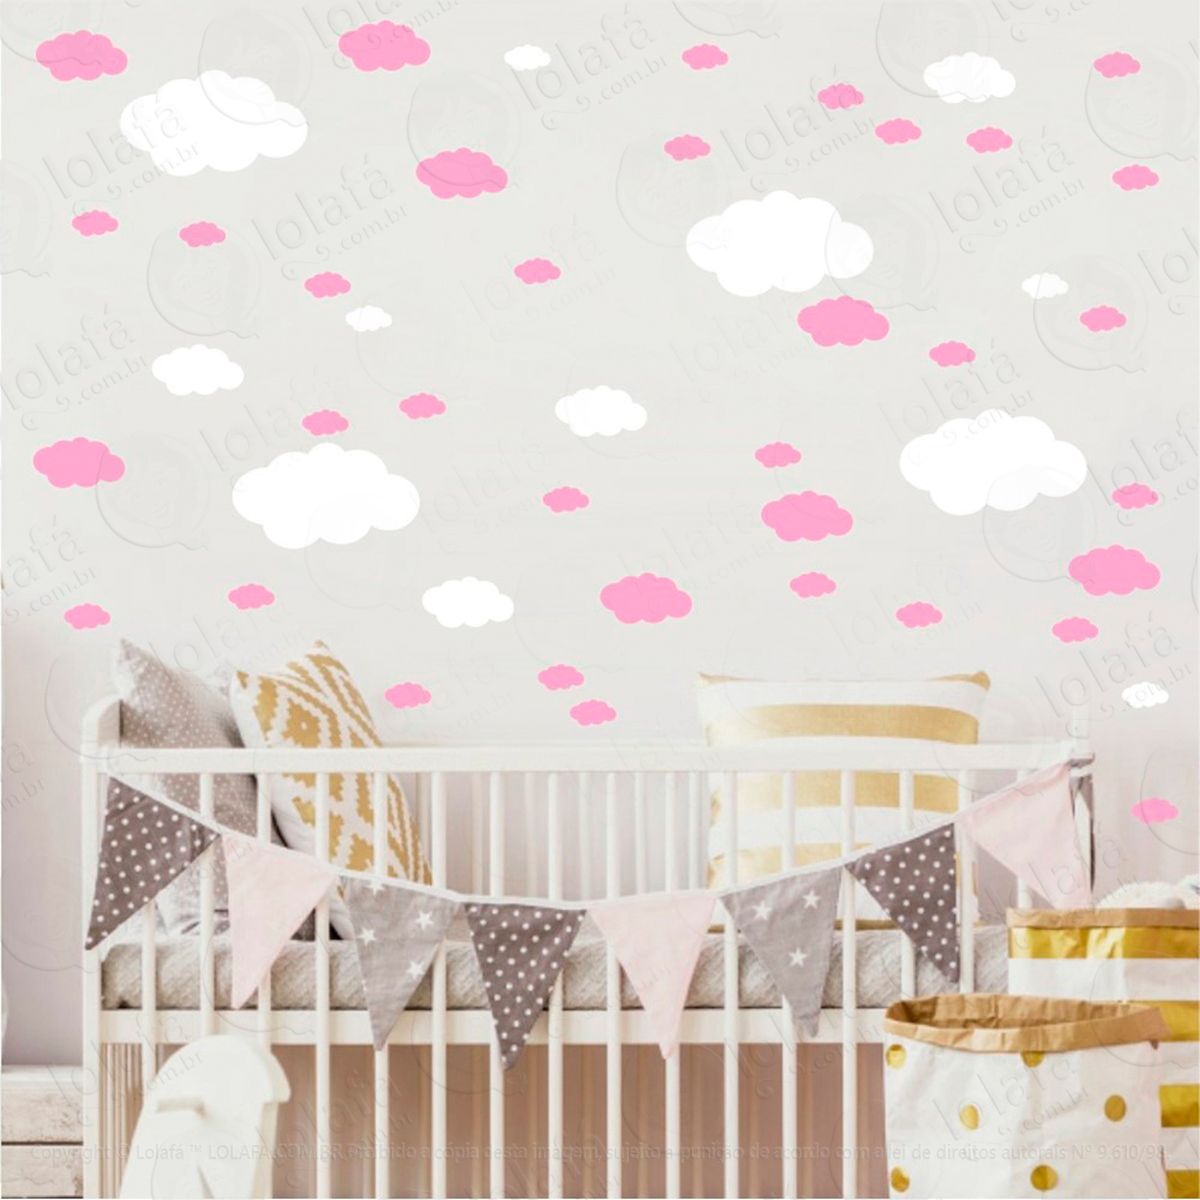 adesivos nuvens 62 peças adesivos para quarto de bebê infantil - mod:1059